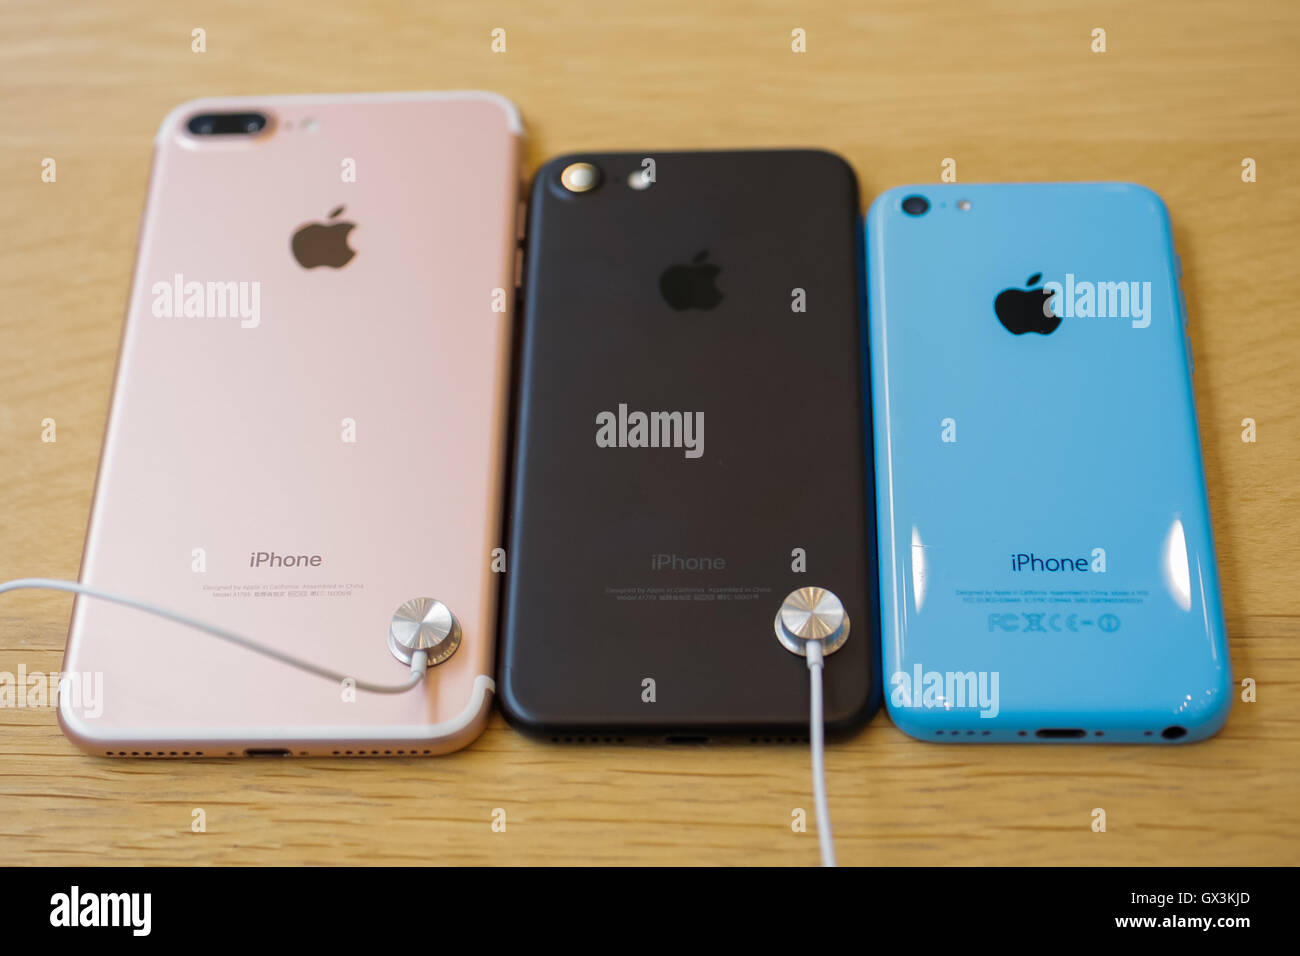 L à R) Le nouvel iPhone 7 Plus avec caméra double et l'iPhone 7 à côté  d'une couleur de l'iPhone lors du lancement de nouveaux smartphones d'Apple iPhone  7 et 7 Plus